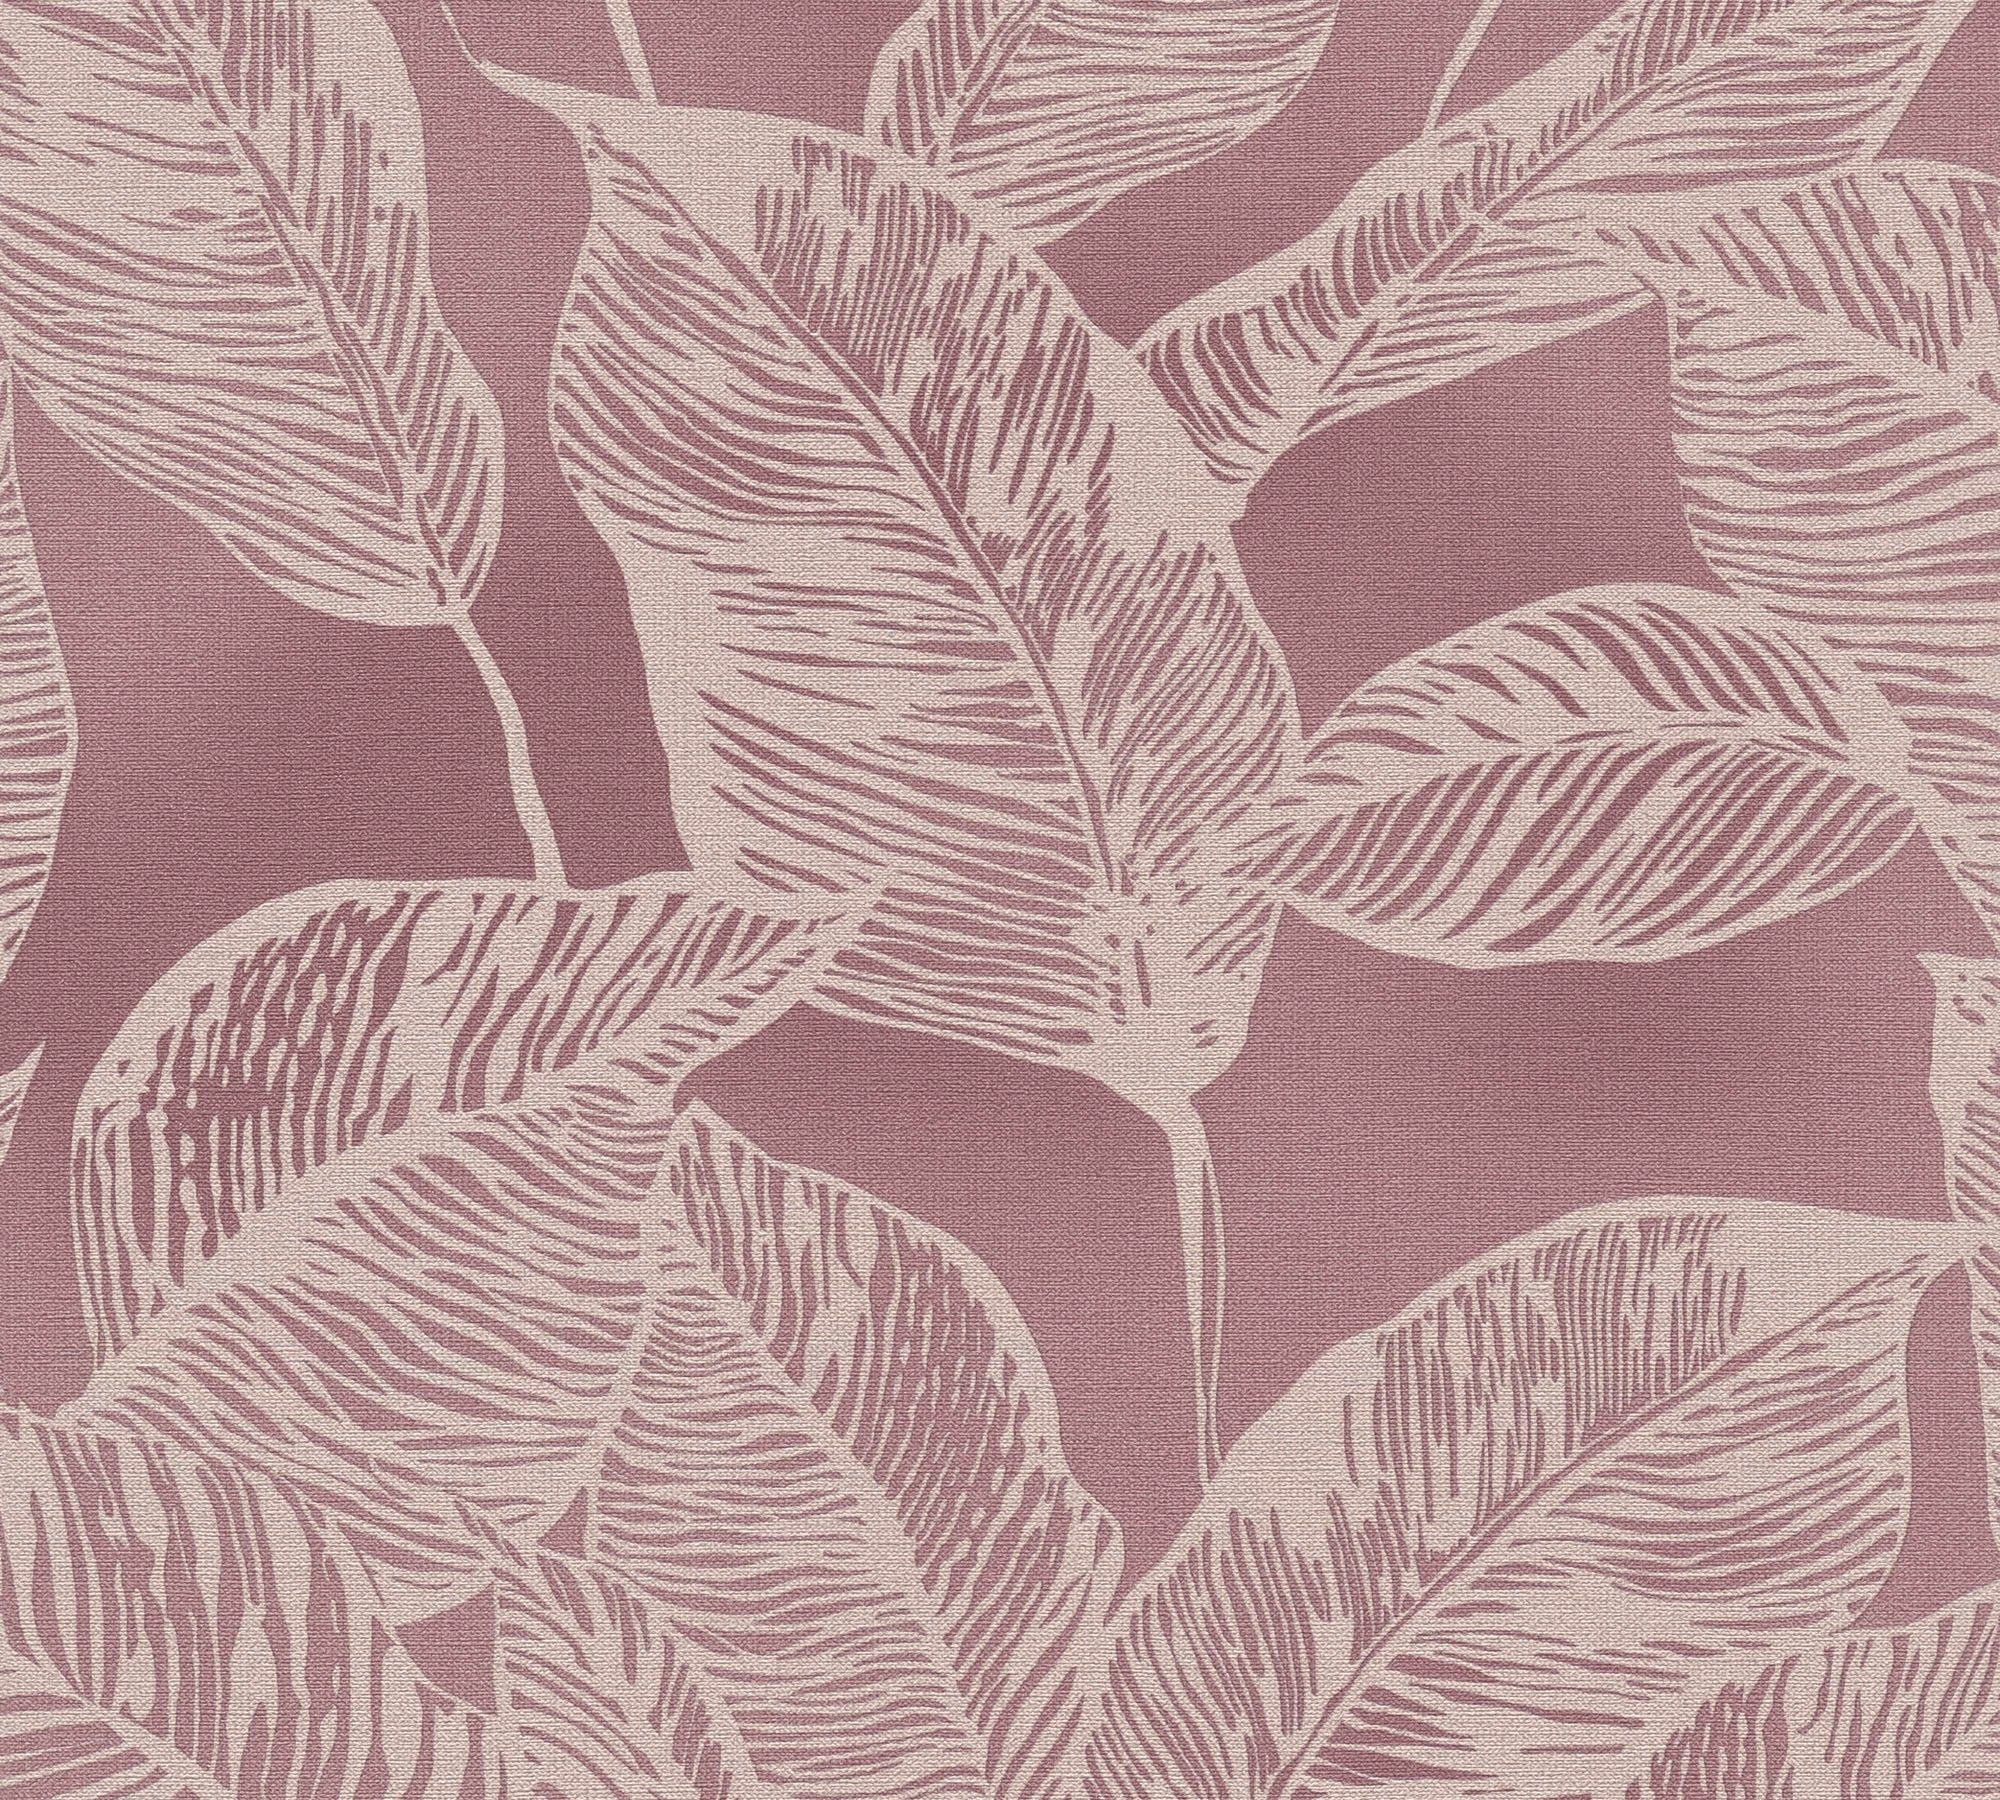 Pflanzen, St), Blätter, Vliestapete (1 Tapete Vlies, Wand Vlies, Création matt, strukturiert, Living Natural Rosa,Creme A.S. leicht